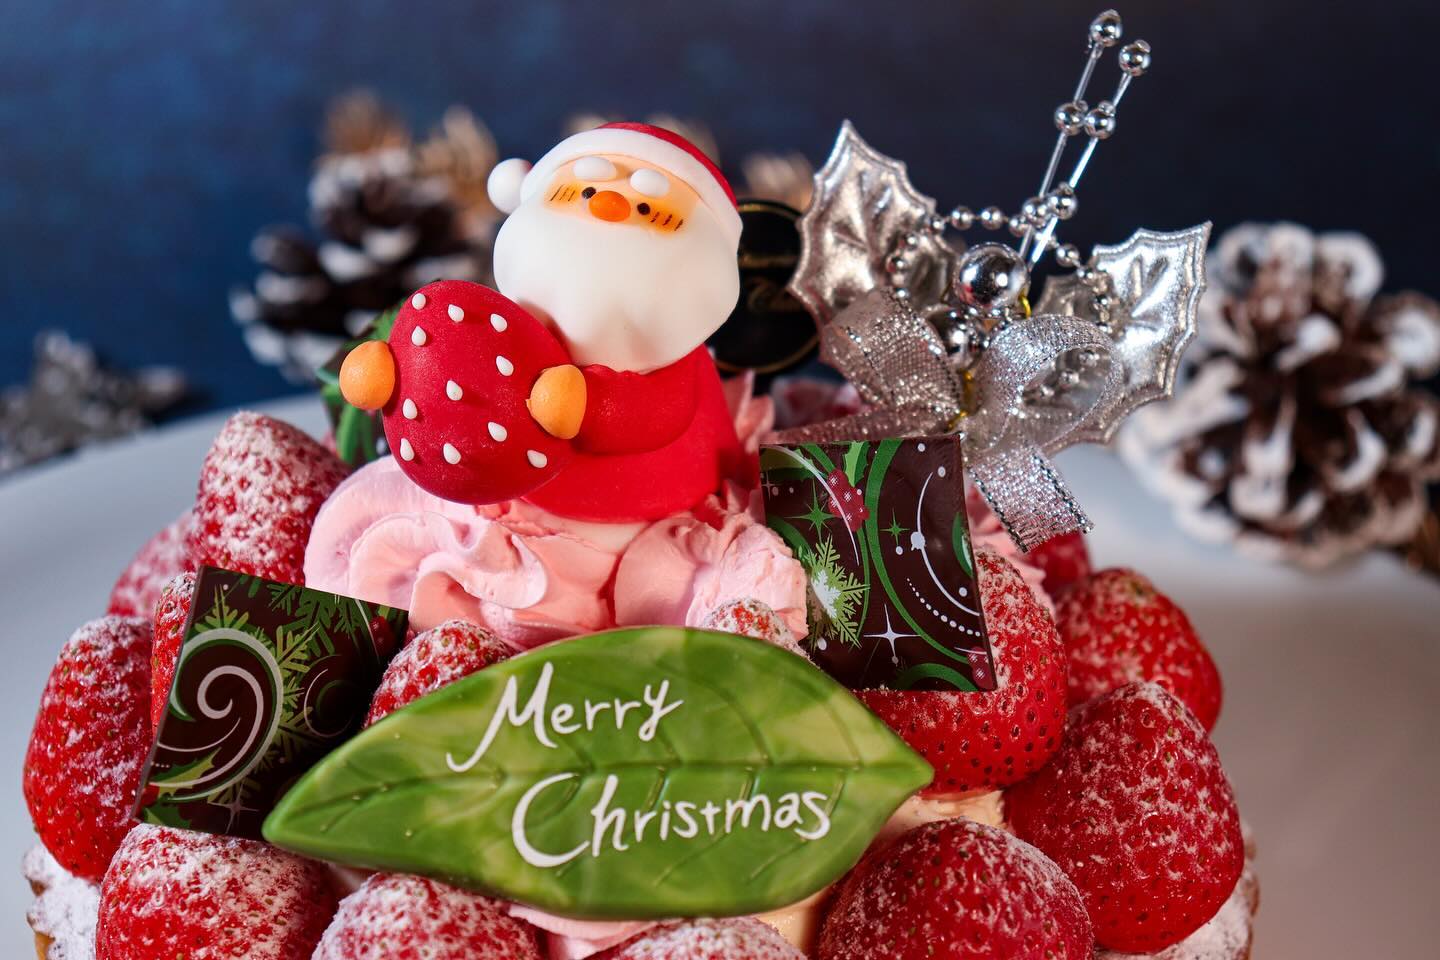 クリスマスケーキNO.6

X'mas 苺タルト 5 号 (15cm)
¥4,100( 税込 ¥4,428)
限定 300台
 
アーモンドクリームと共に 
香ばしく焼き上げたサクサクの 
タルト生地にカスタードクリームと
丸ごとの 苺をふんだんに飾りました。